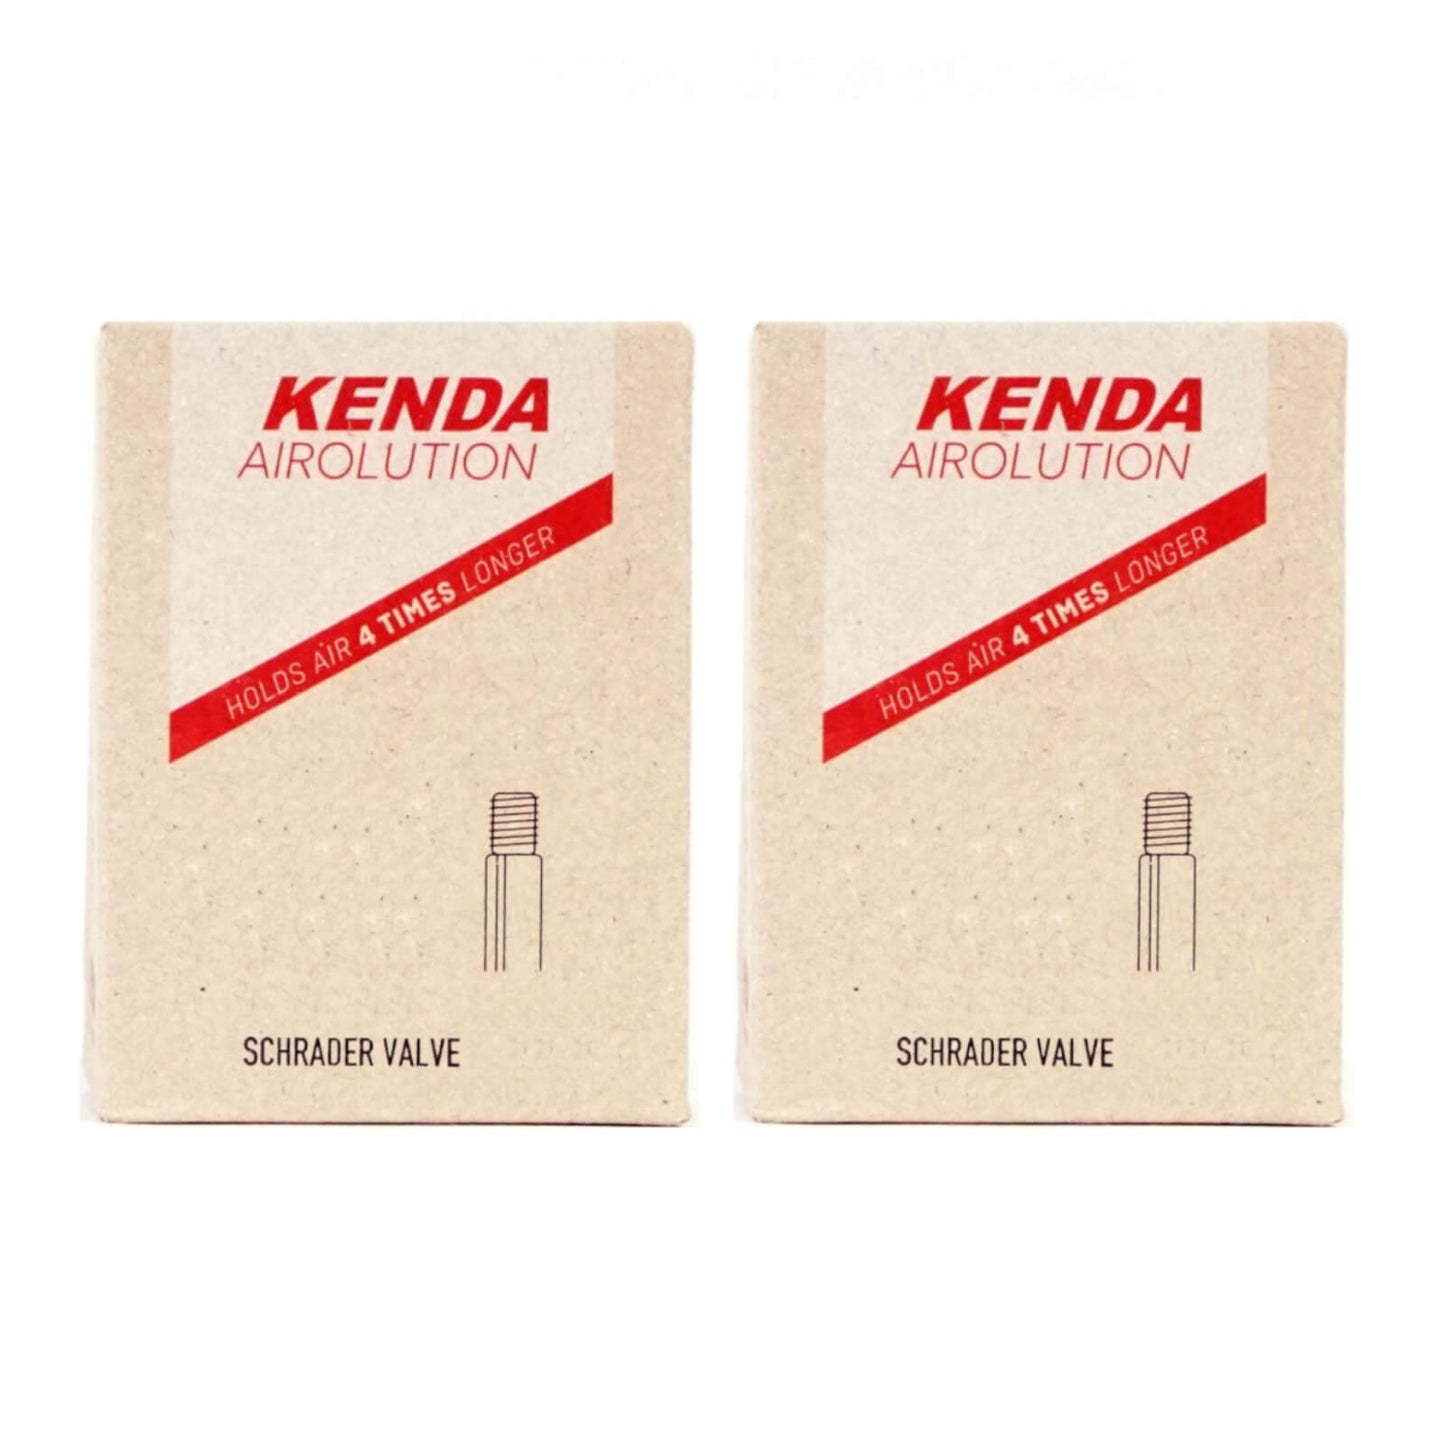 Kenda Airolution 20x2.0-2.4" 20 Inch Schrader Valve Bike Inner Tube Pack of 2